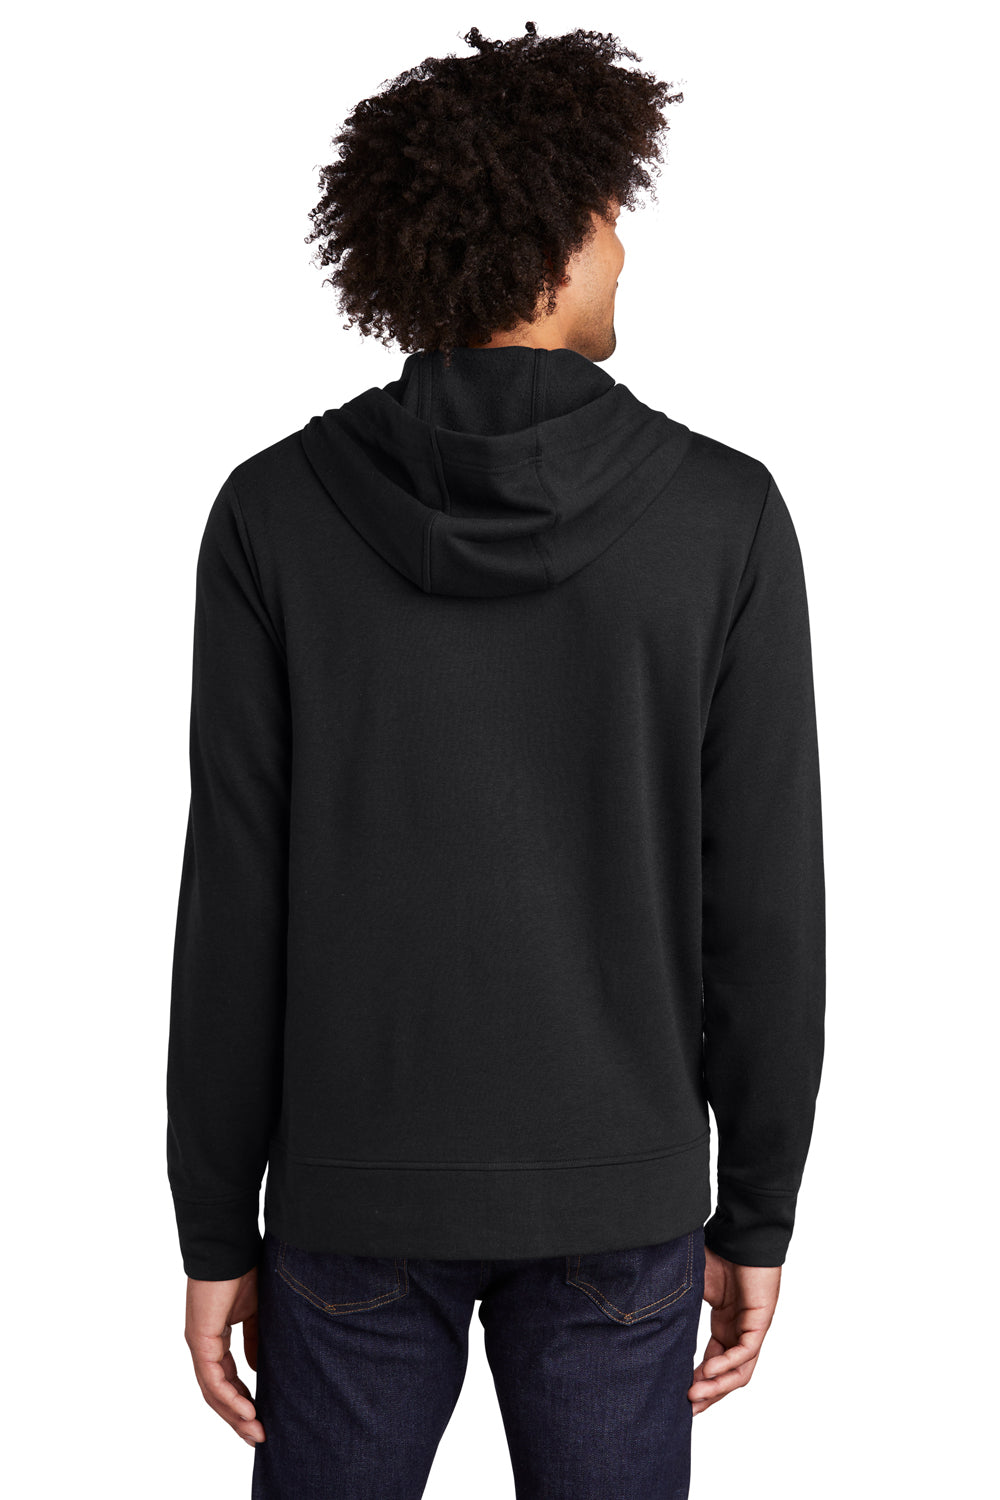 Sport-Tek Mens Moisture Wicking Fleece Full Zip Hooded Sweatshirt Hoodie Black Side